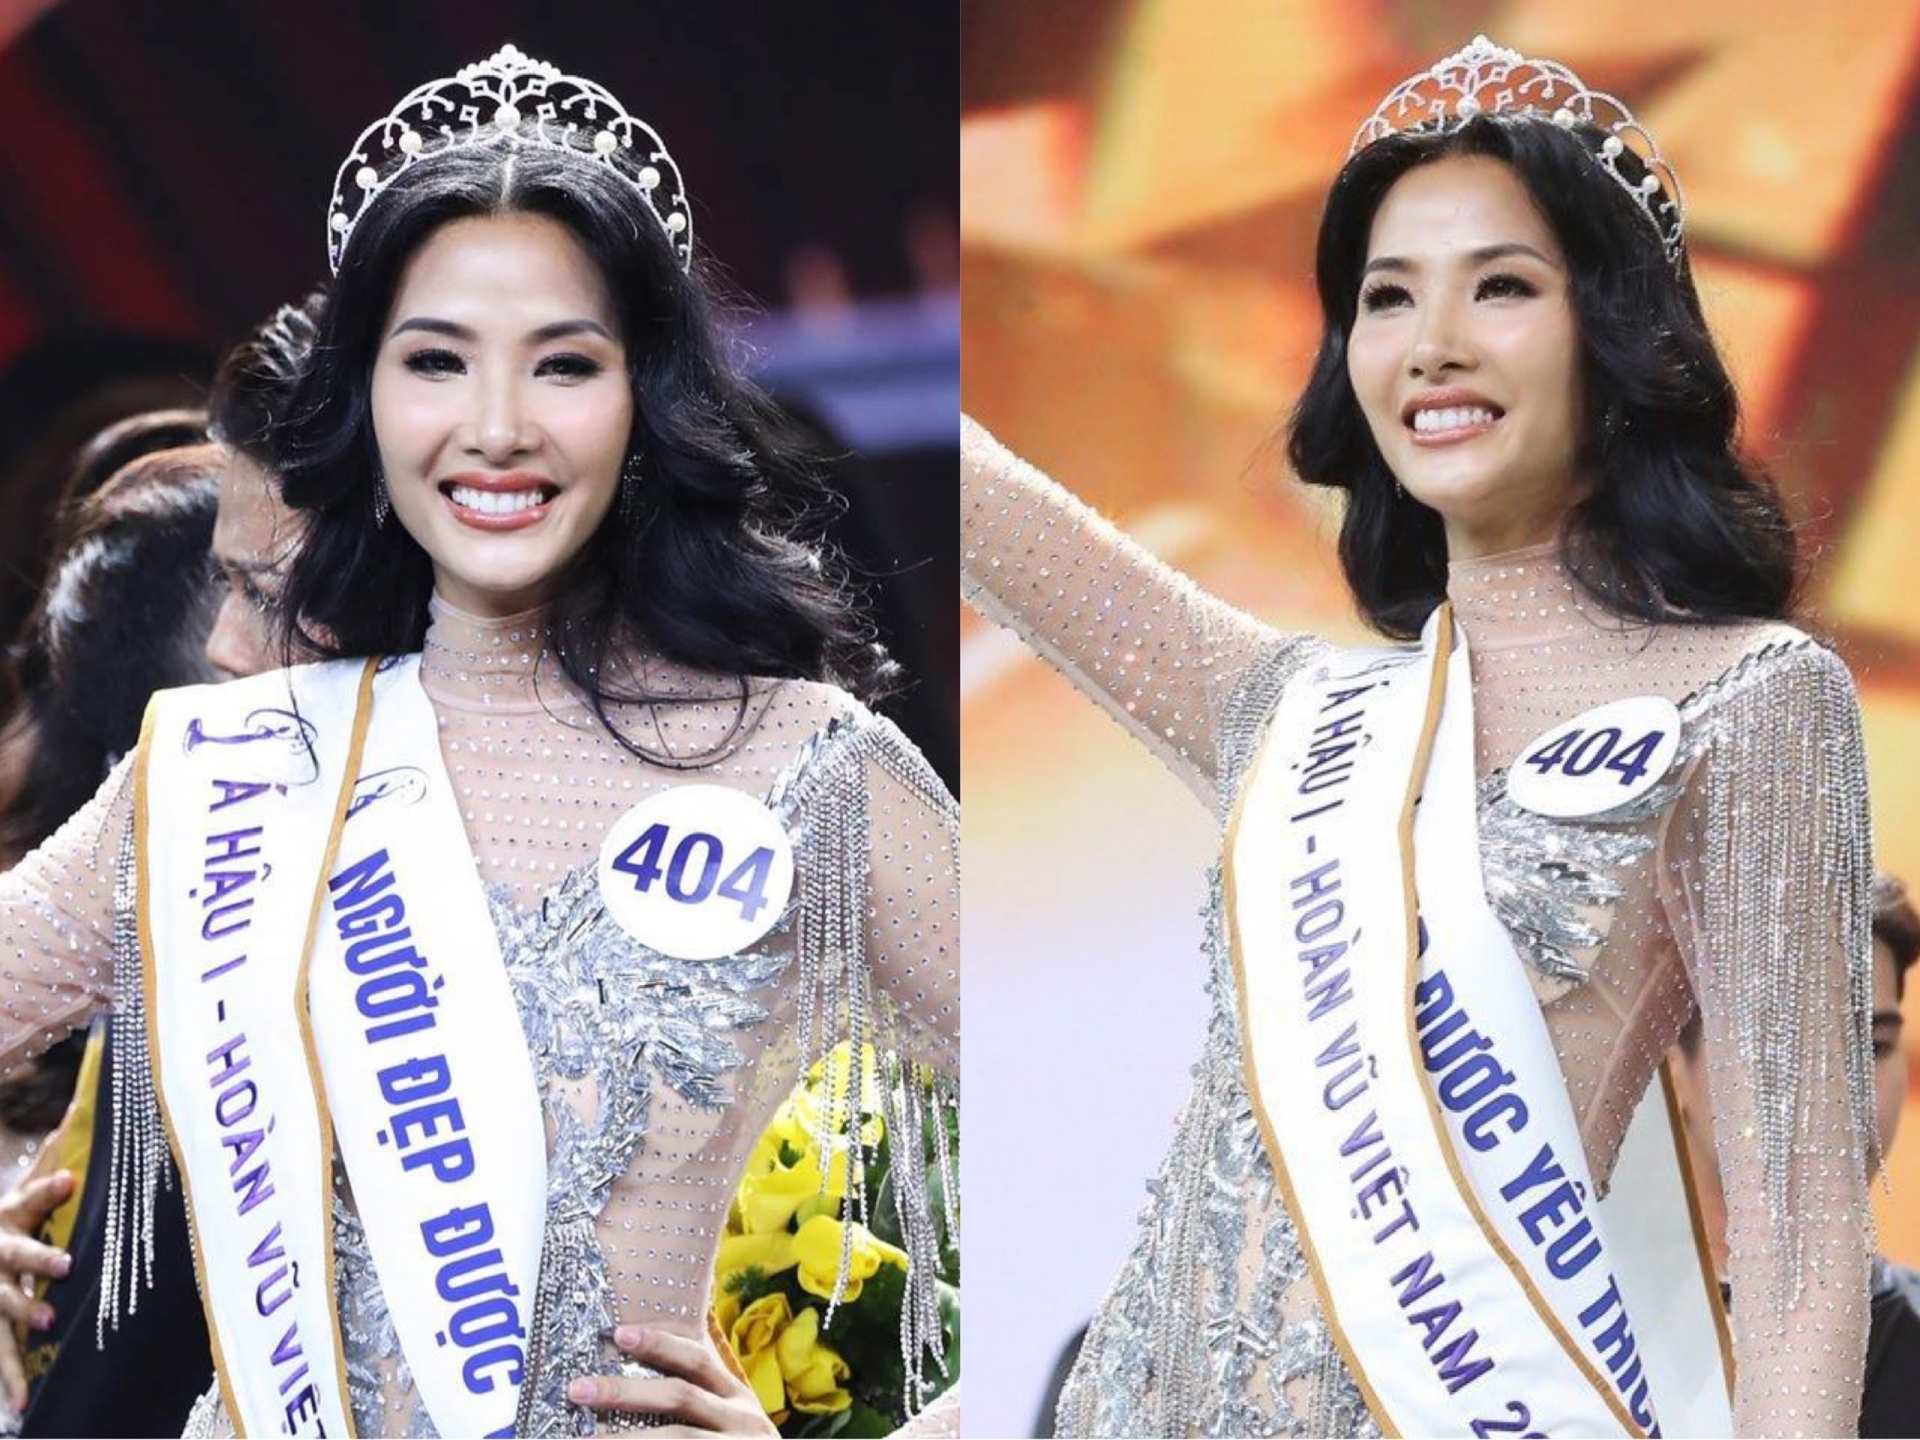 'Chân dài' xứ Thanh gây bất ngờ khi giành danh hiệu Á hậu 1 tại cuộc thi Hoa hậu hoàn vũ Việt Nam 2017.